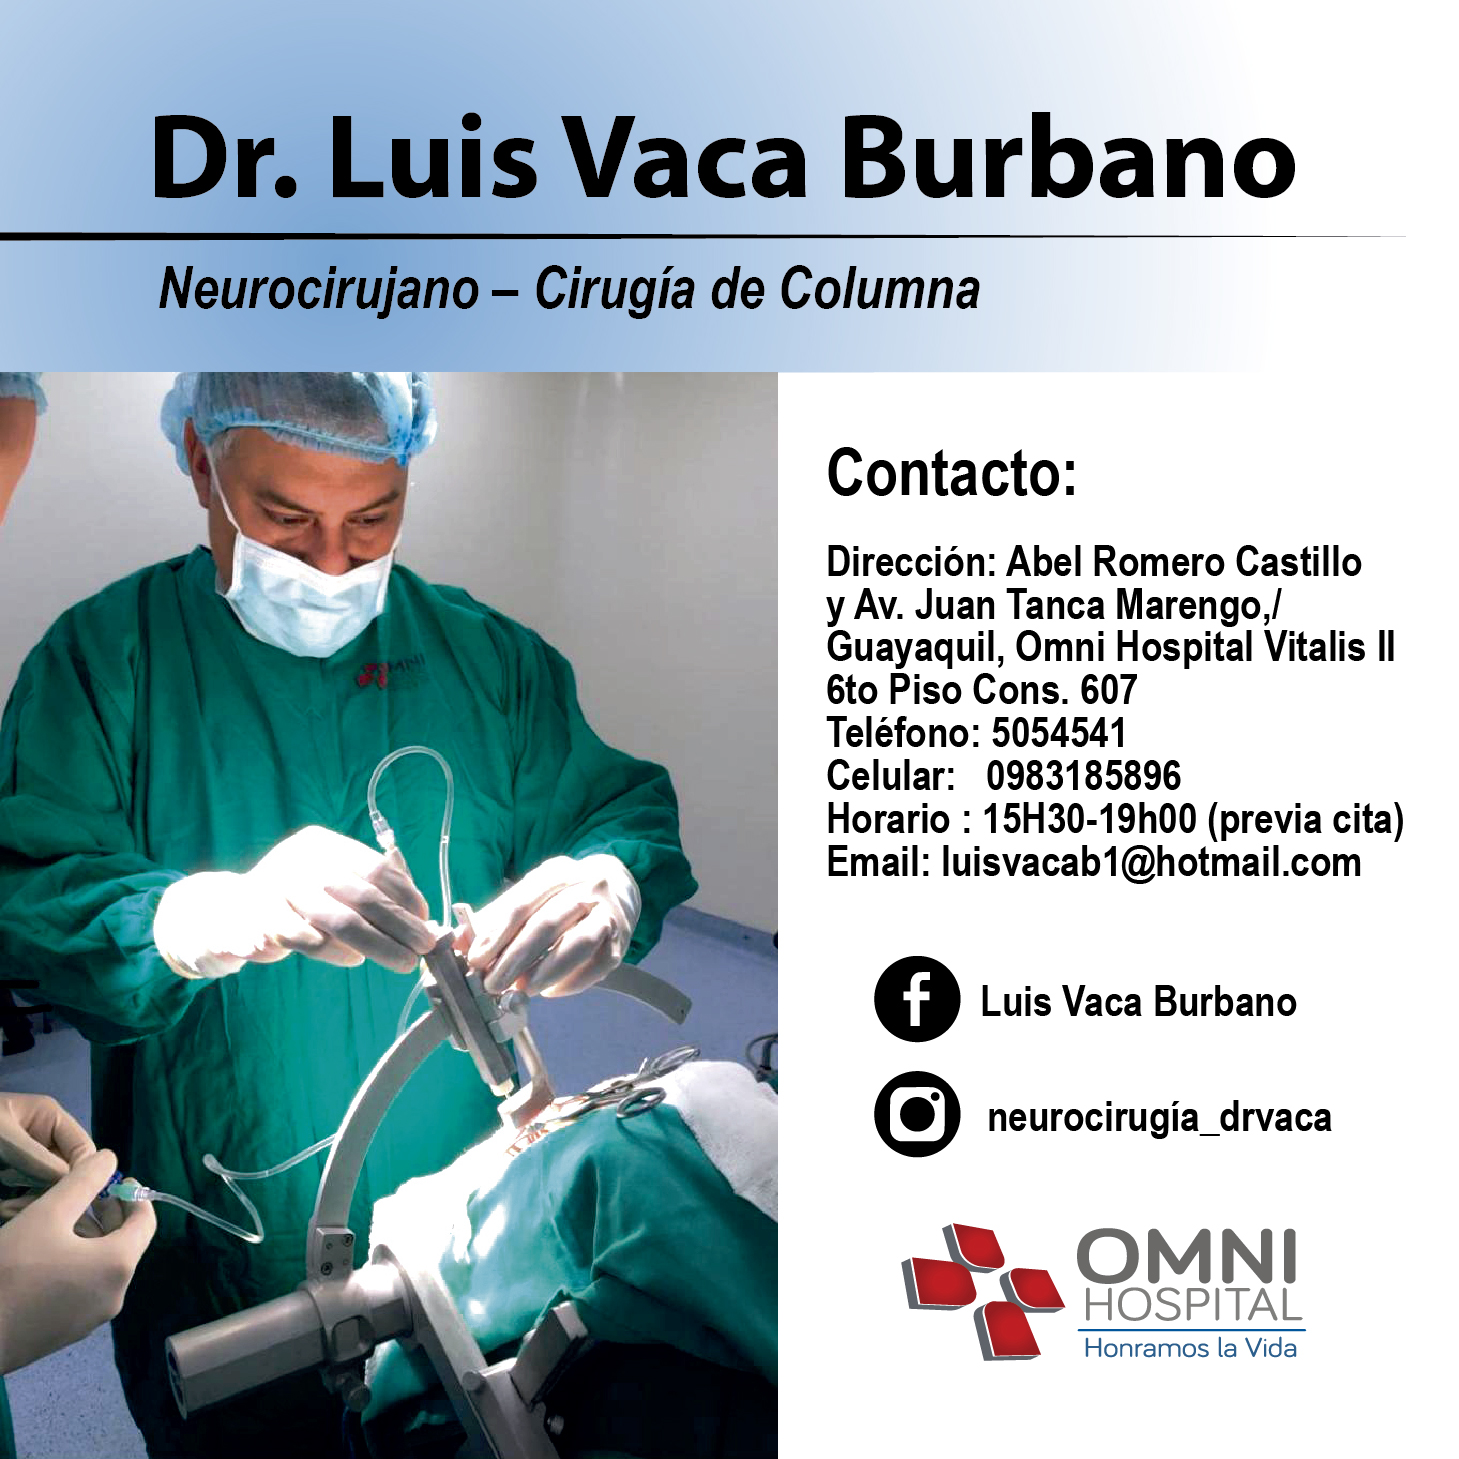 Dr. Luis Vaca Burbano